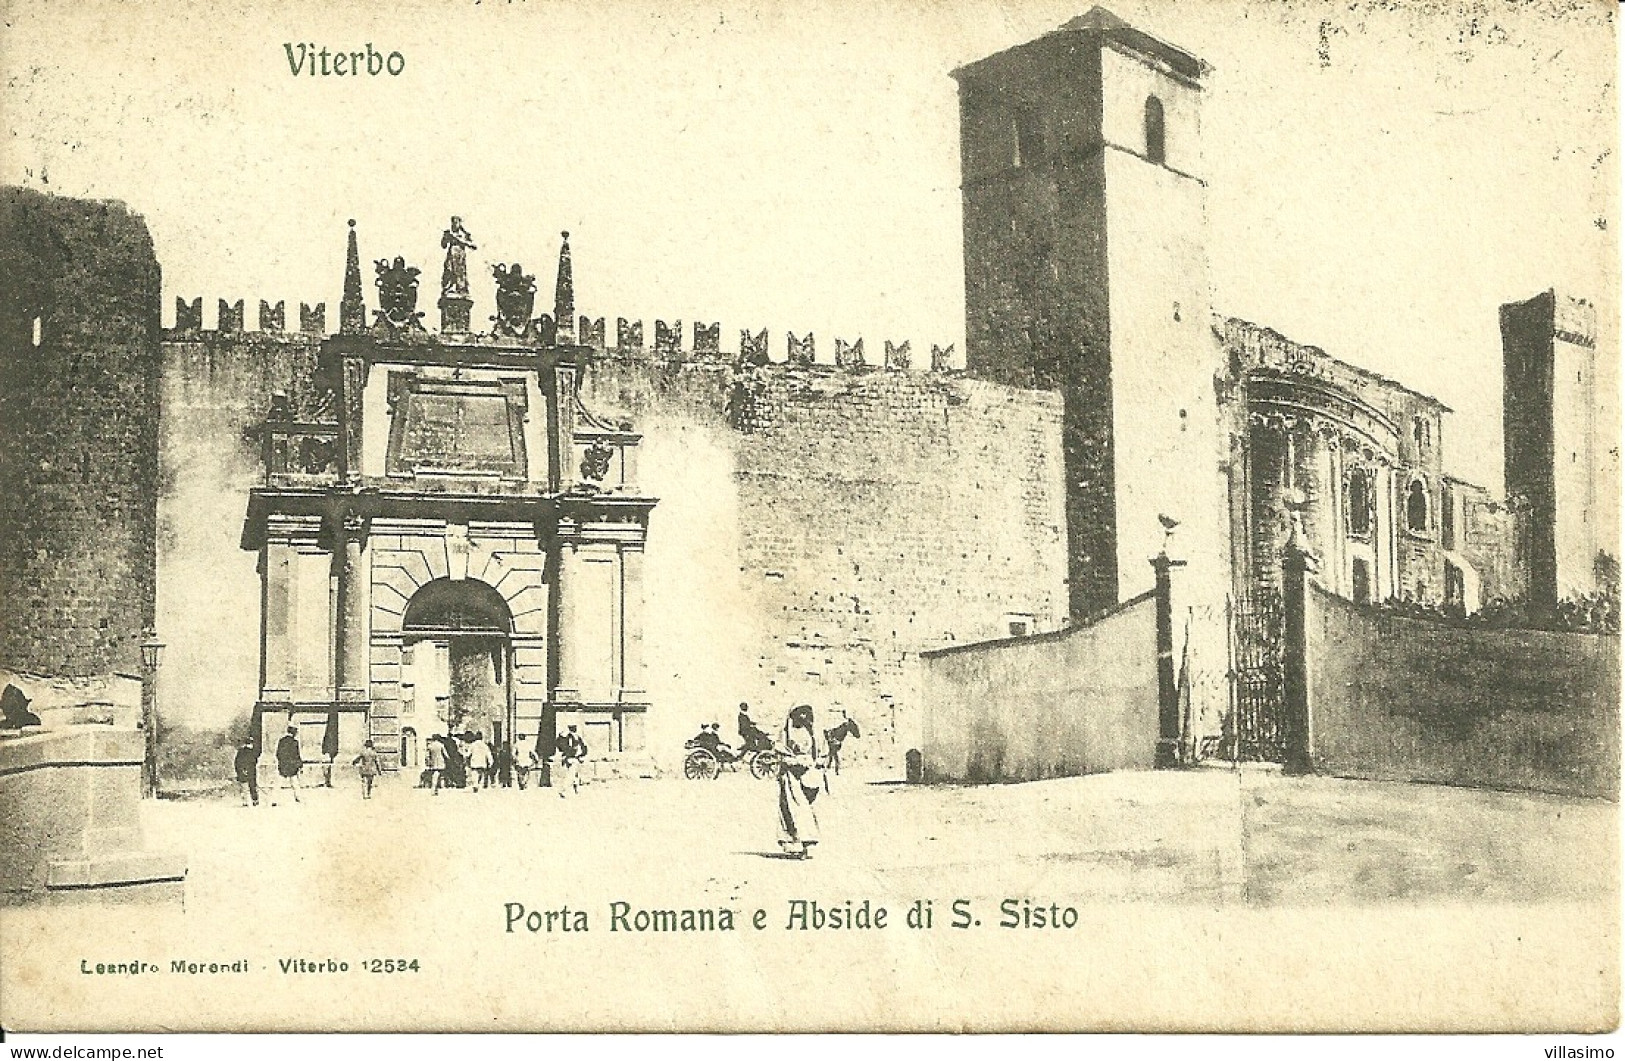 VITERBO, PORTA ROMANA E ABSIDE DI S. SISTO - F.P. - VG. 1906 - Viterbo